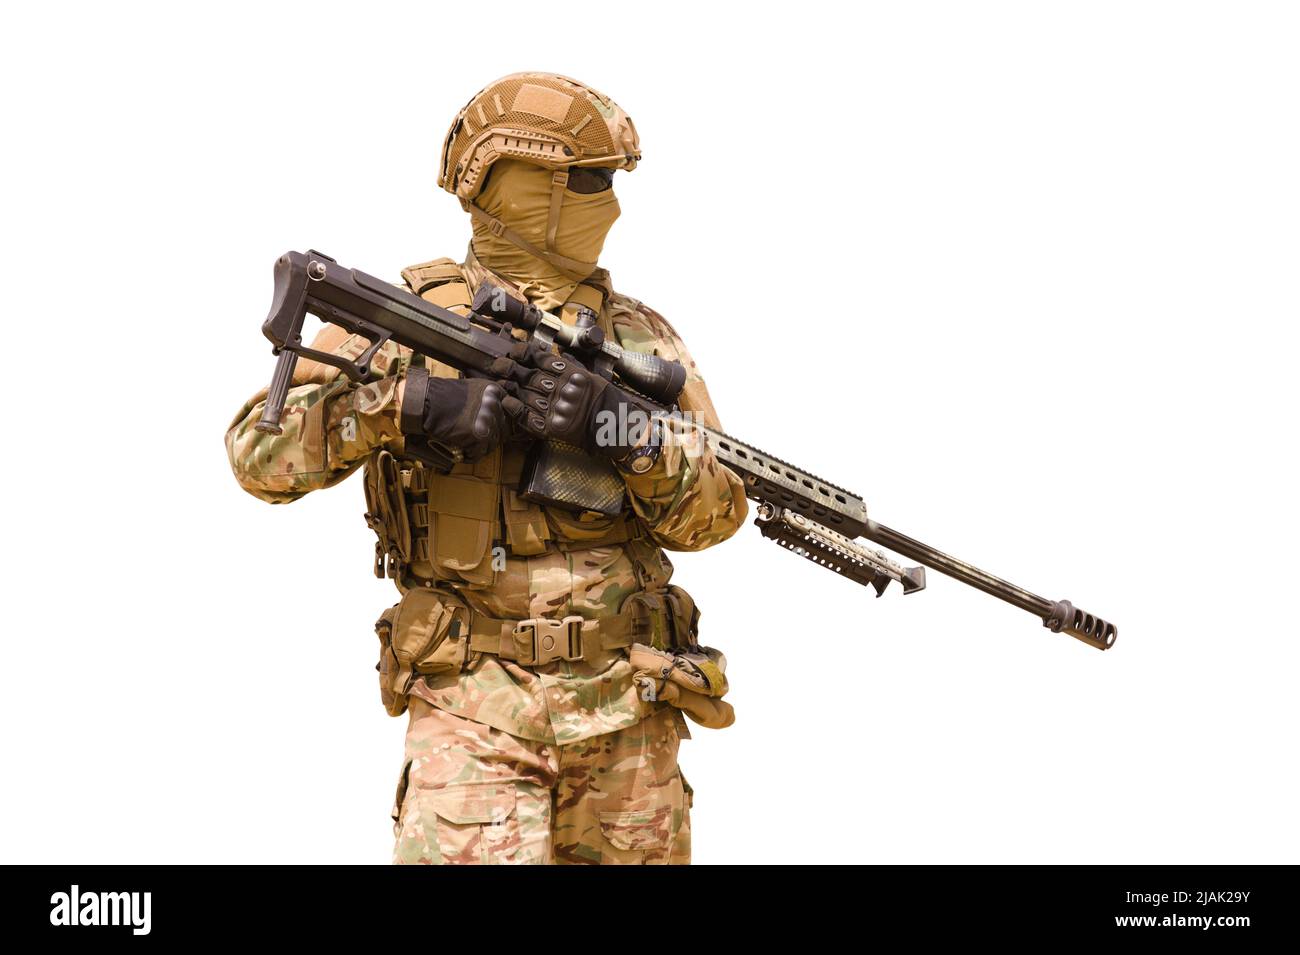 Soldat des forces spéciales équipé d'un fusil de sniper, isolé sur fond blanc. Banque D'Images